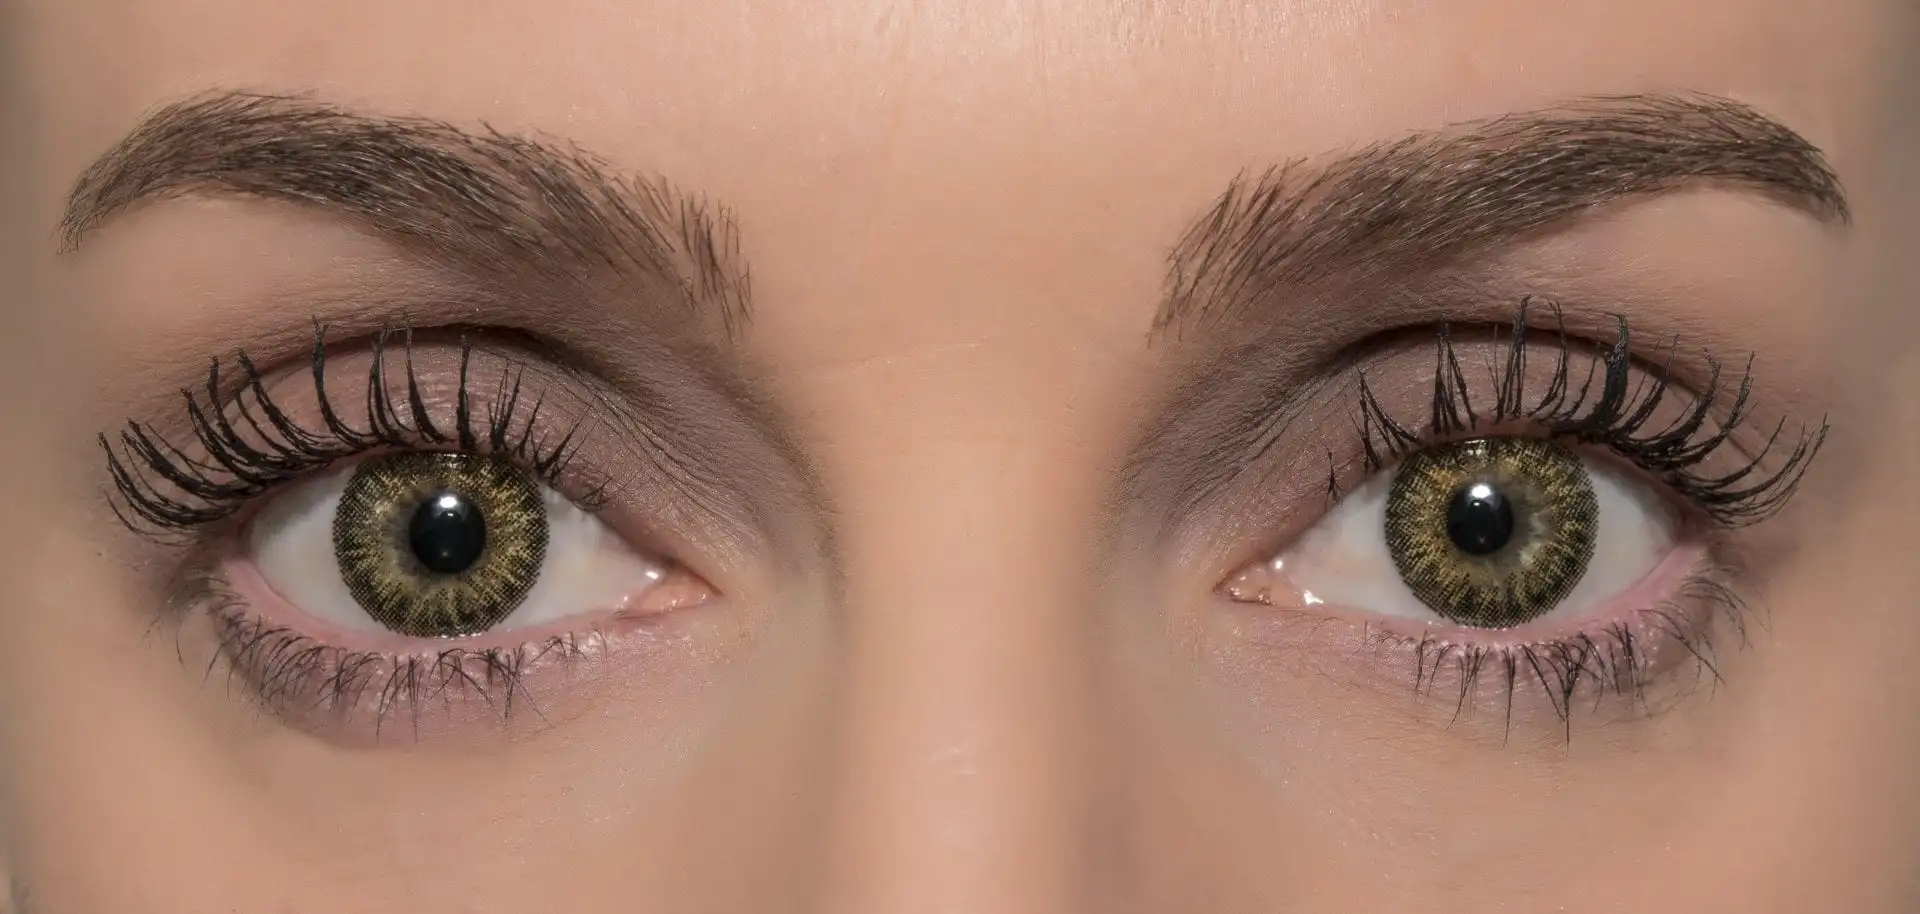 Farbige Kontaktlinsen – Gründe für die Verwendung, Vorsichtsmaßnahmen und Gefahren bei der Verwendung